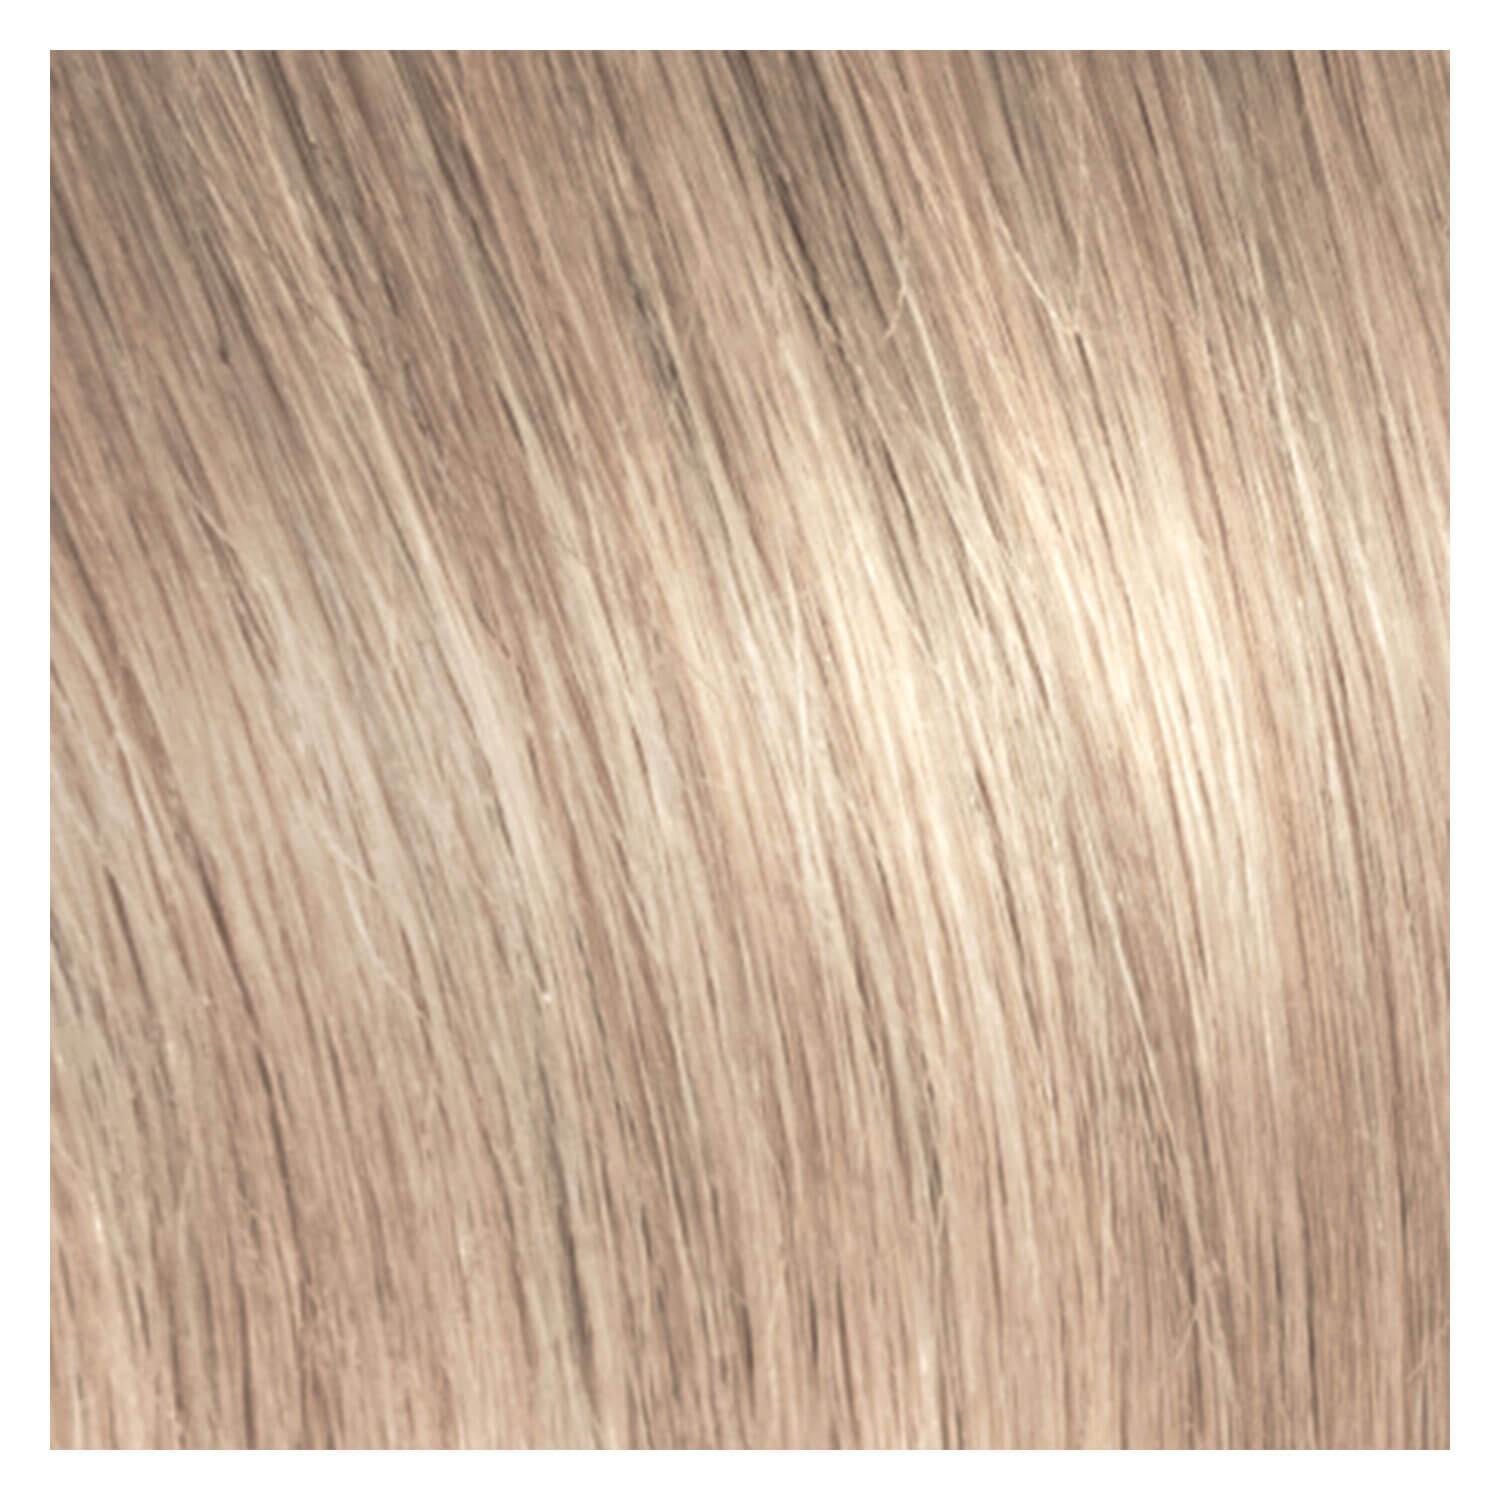 SHE Bonding-System Hair Extensions Straight - 103 Blonde Argentée 55/60cm